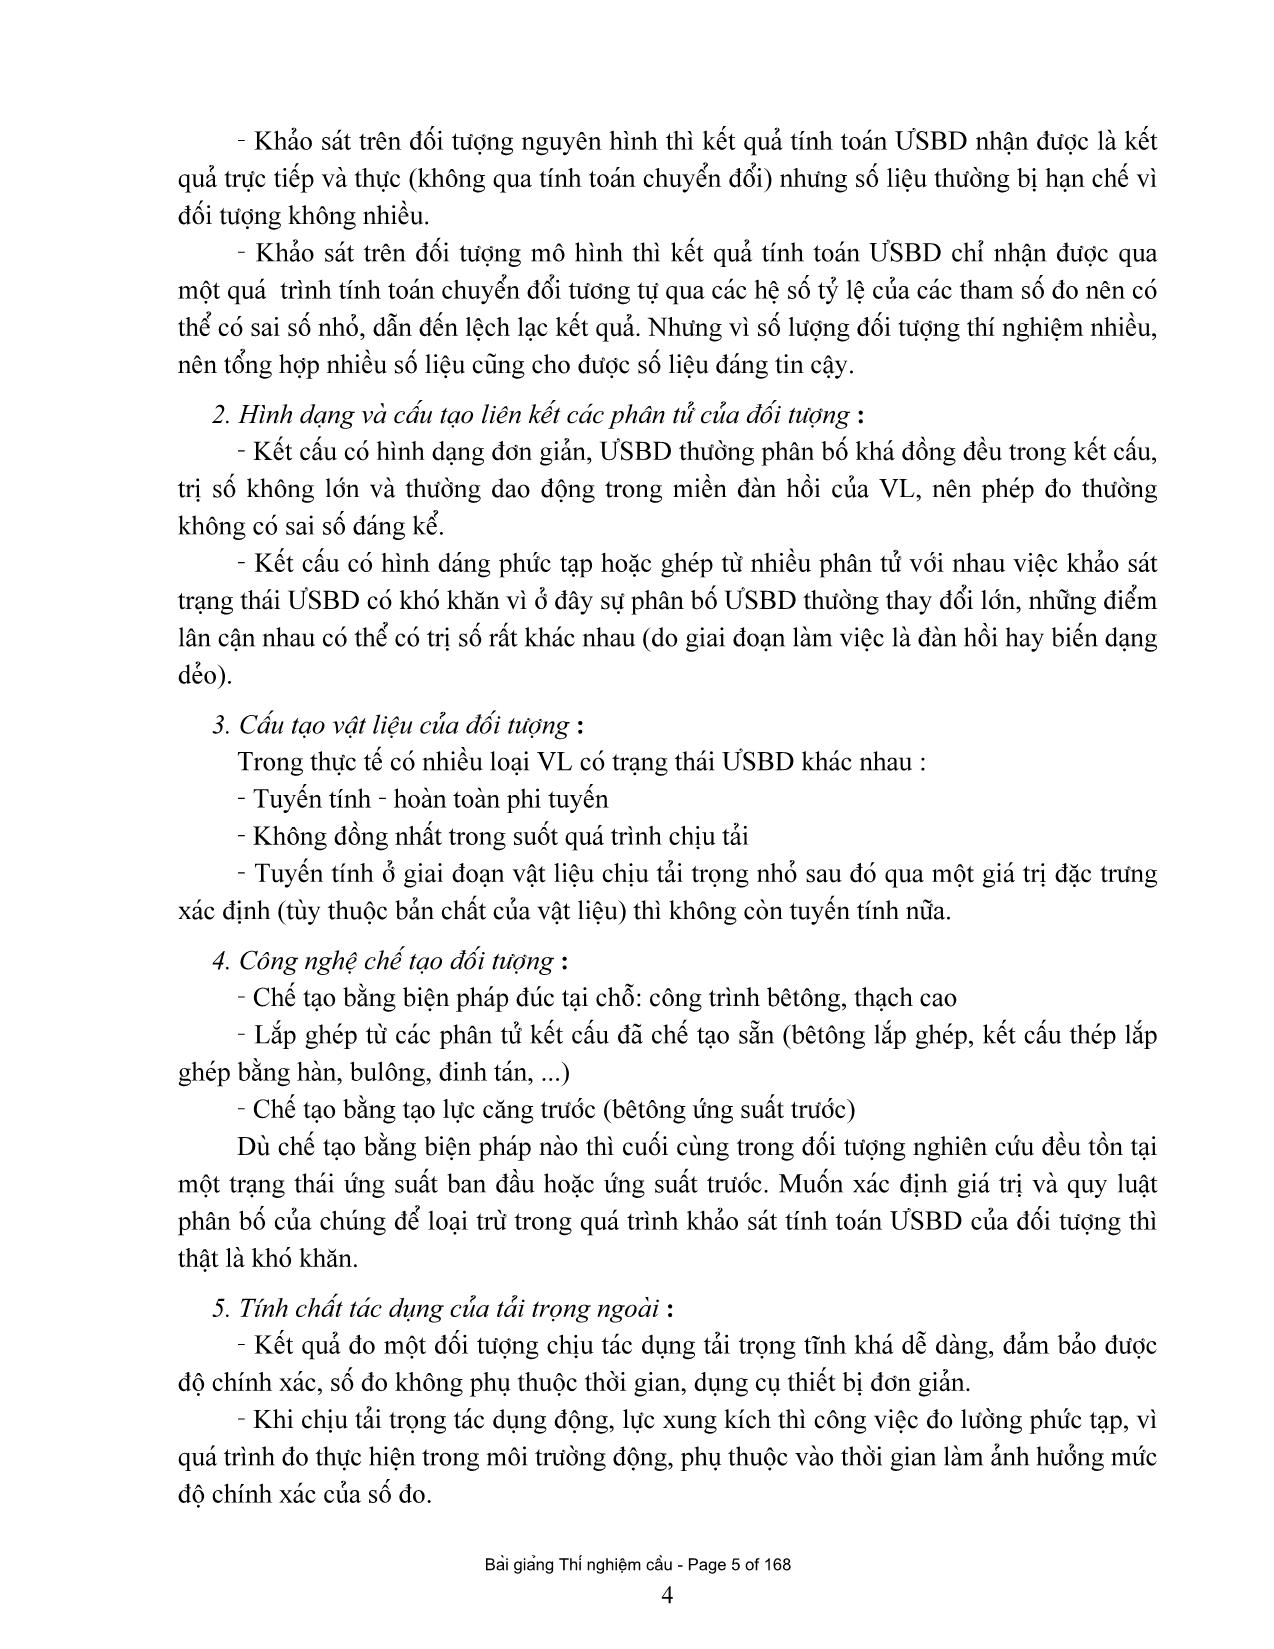 Giáo trình Thí nghiệm cầu trang 5